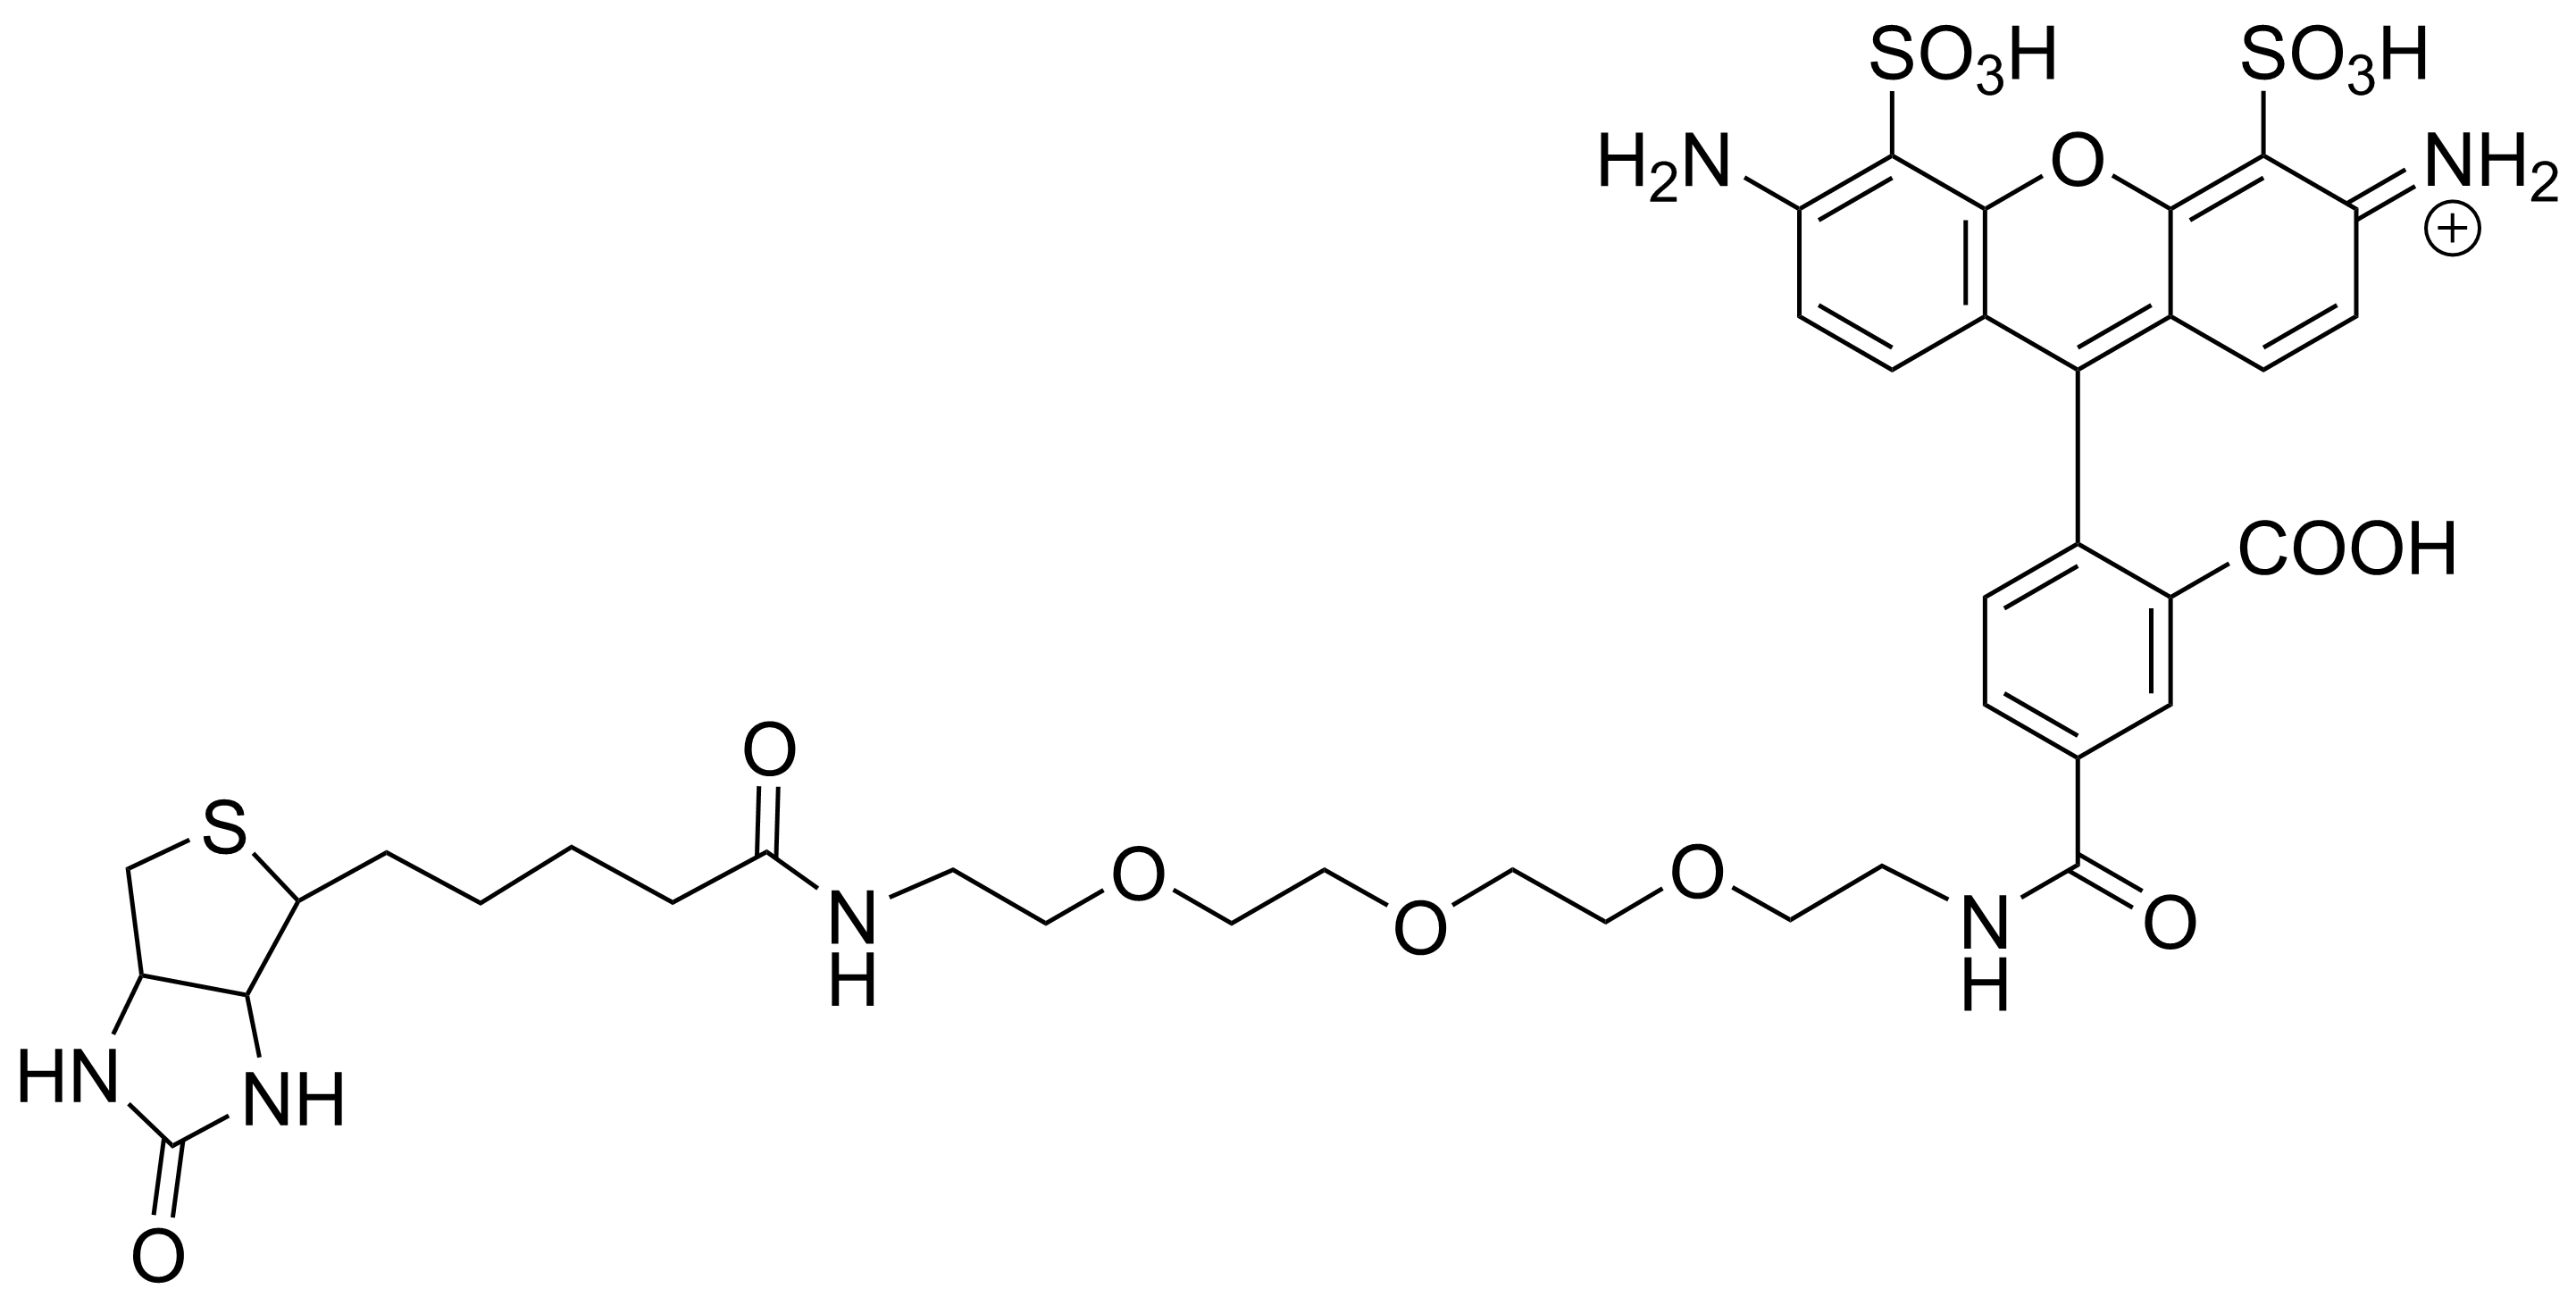 APDye 488 Biotin